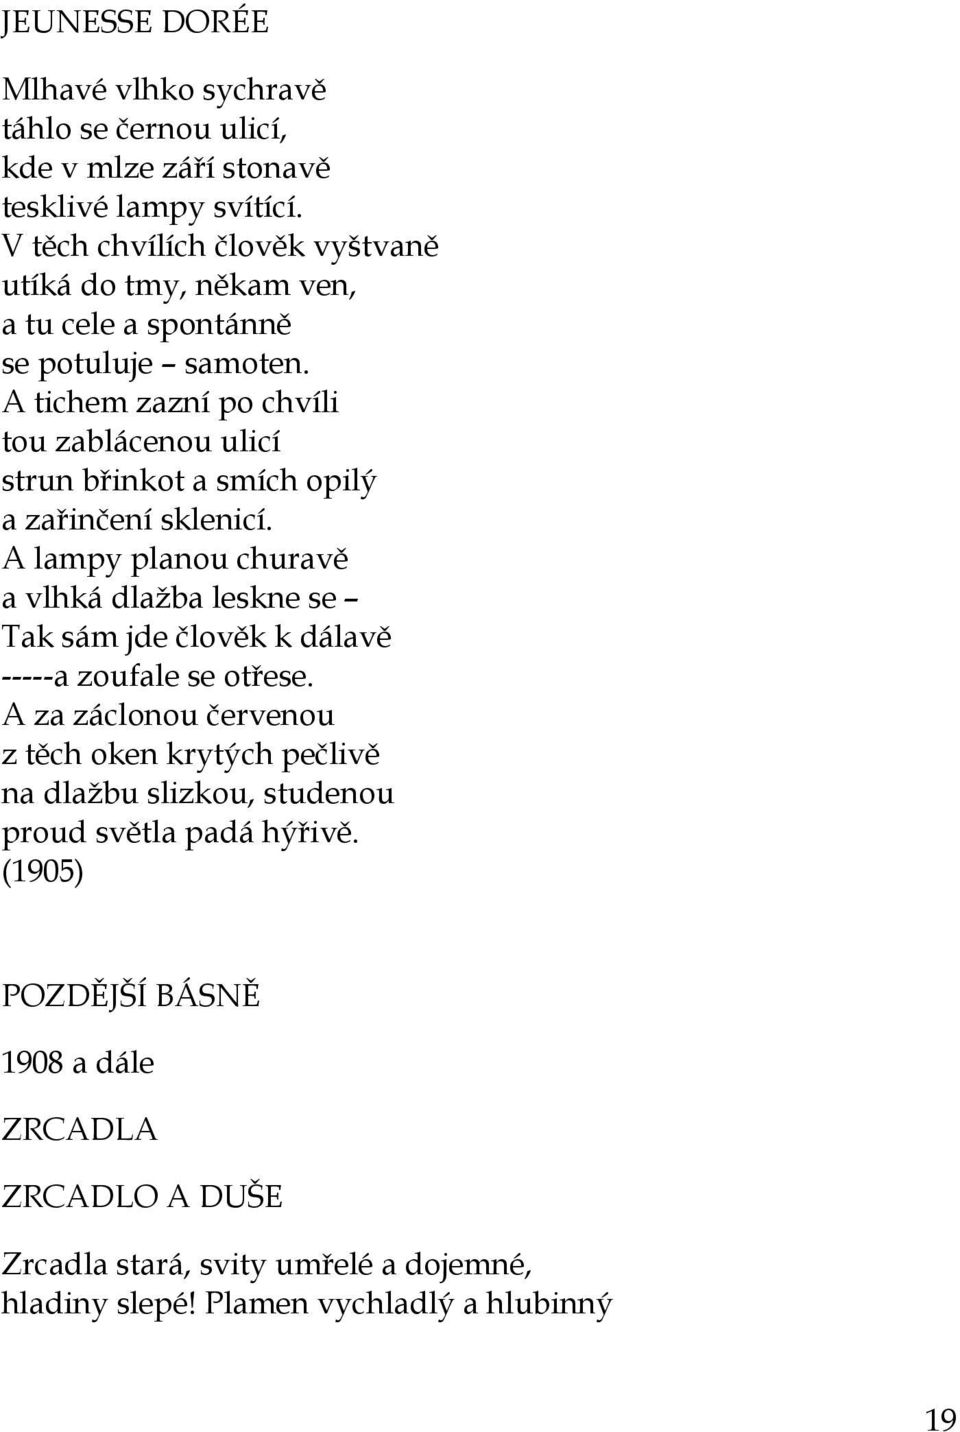 Karel Čapek BÁSNICKÉ POČÁTKY - PDF Free Download